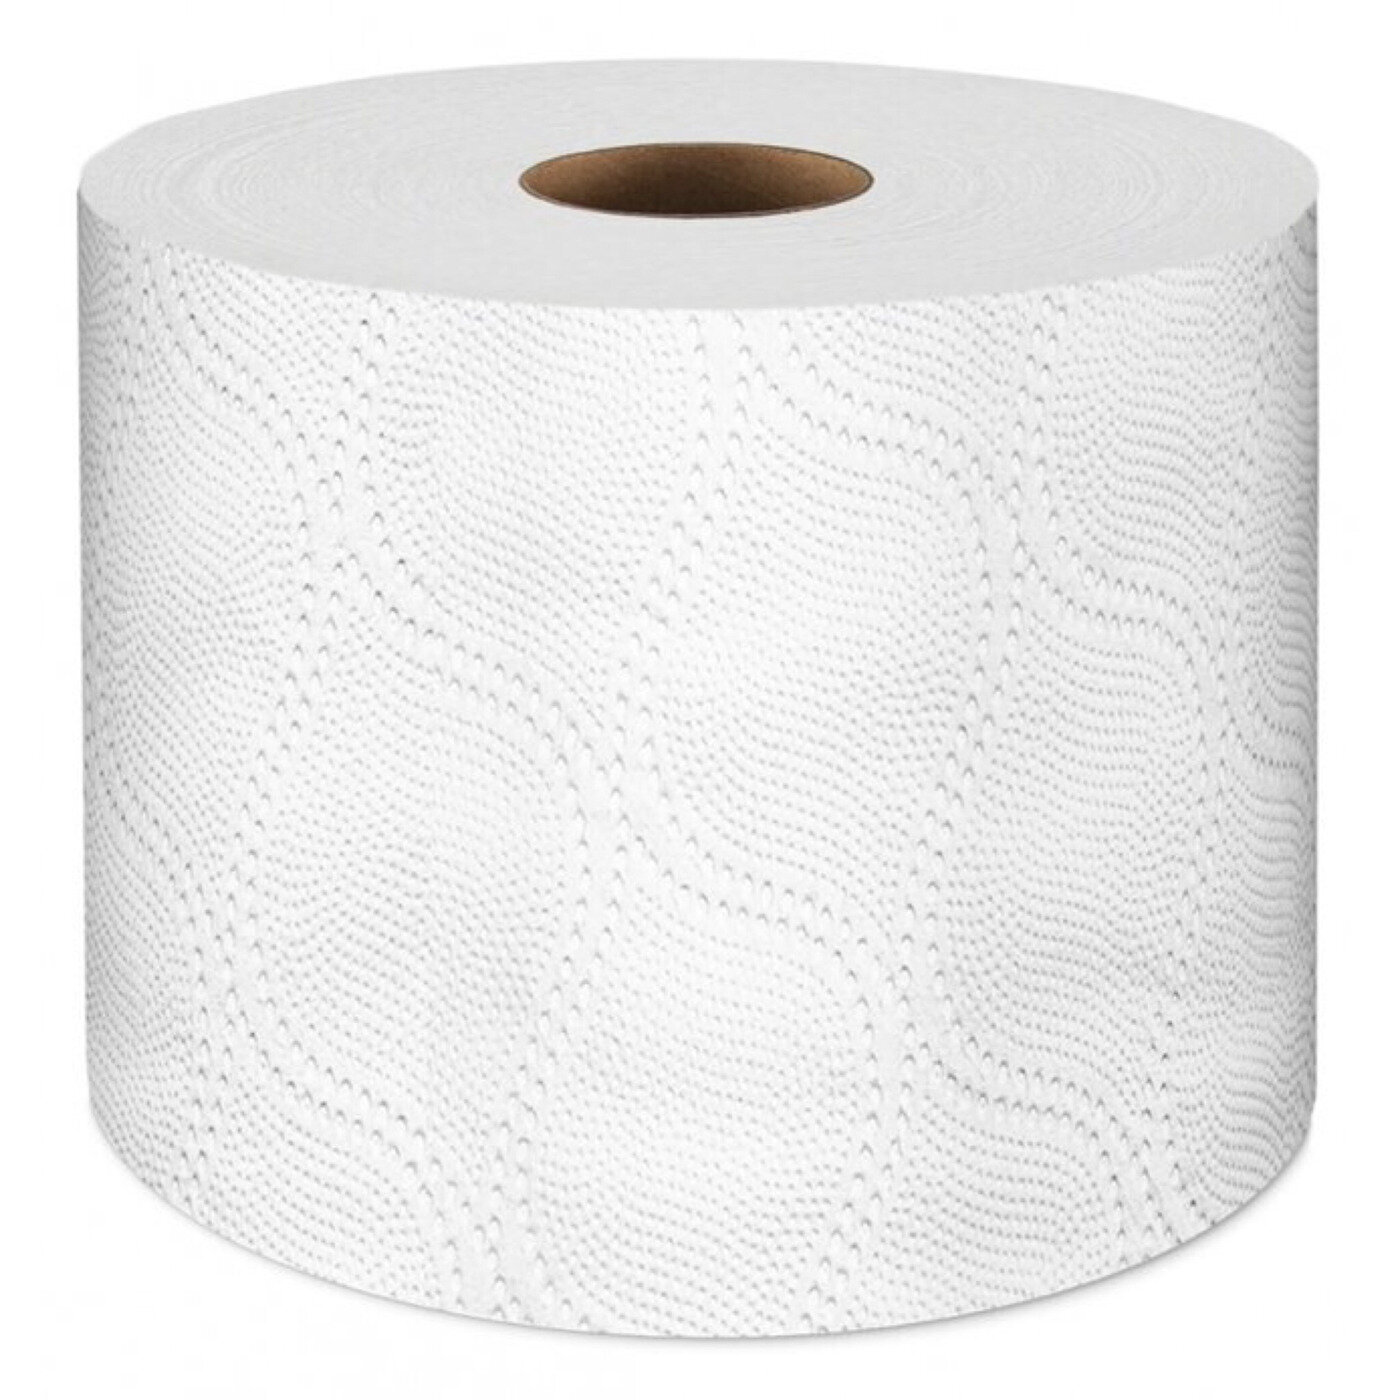 Туалетная бумага Veiro Professional Comfort T207, двухслойная, 48 рулонов по 25 м (200 листов)